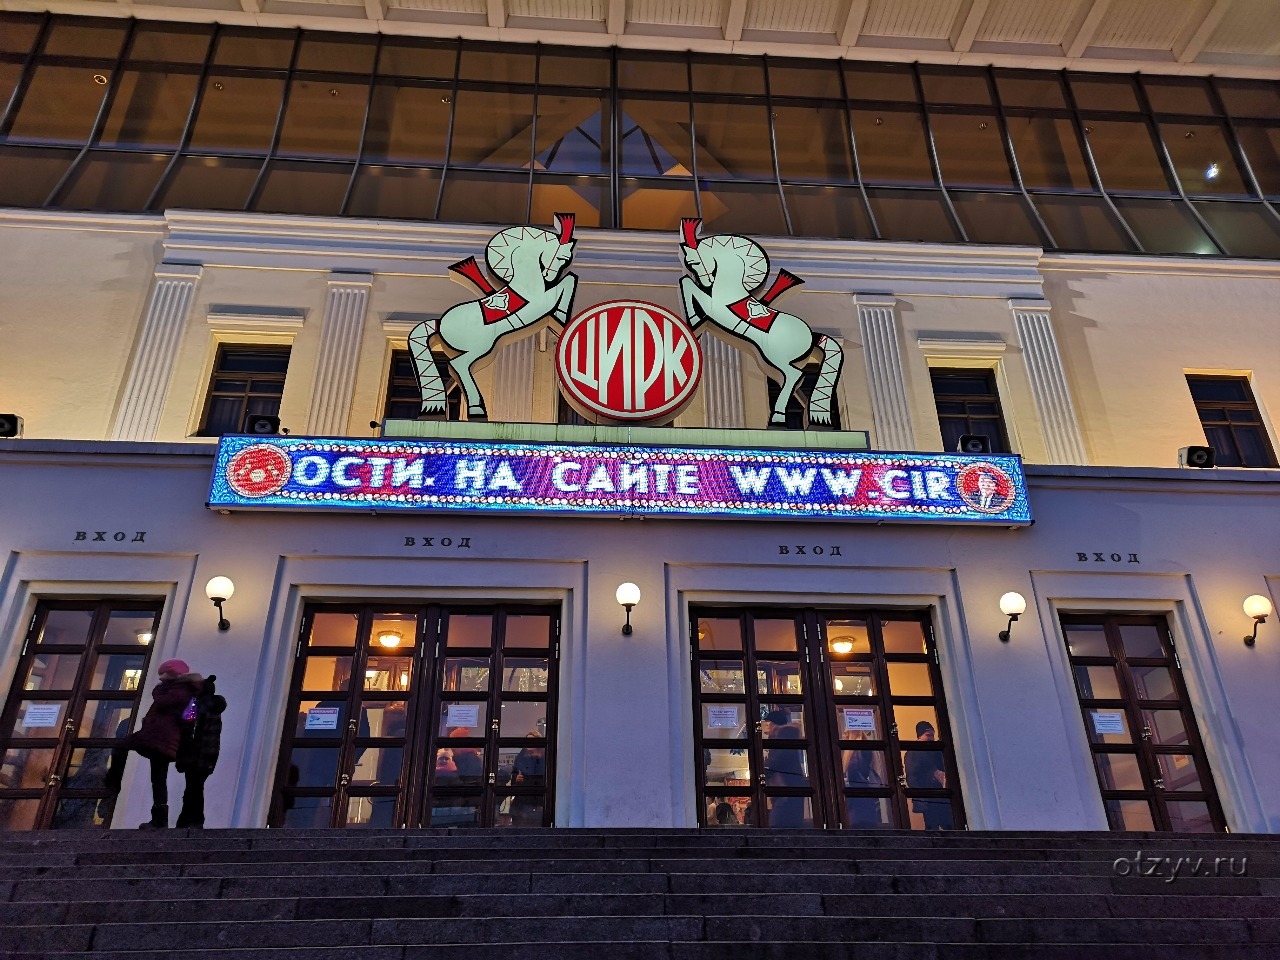 Фото цирка на цветном бульваре в москве